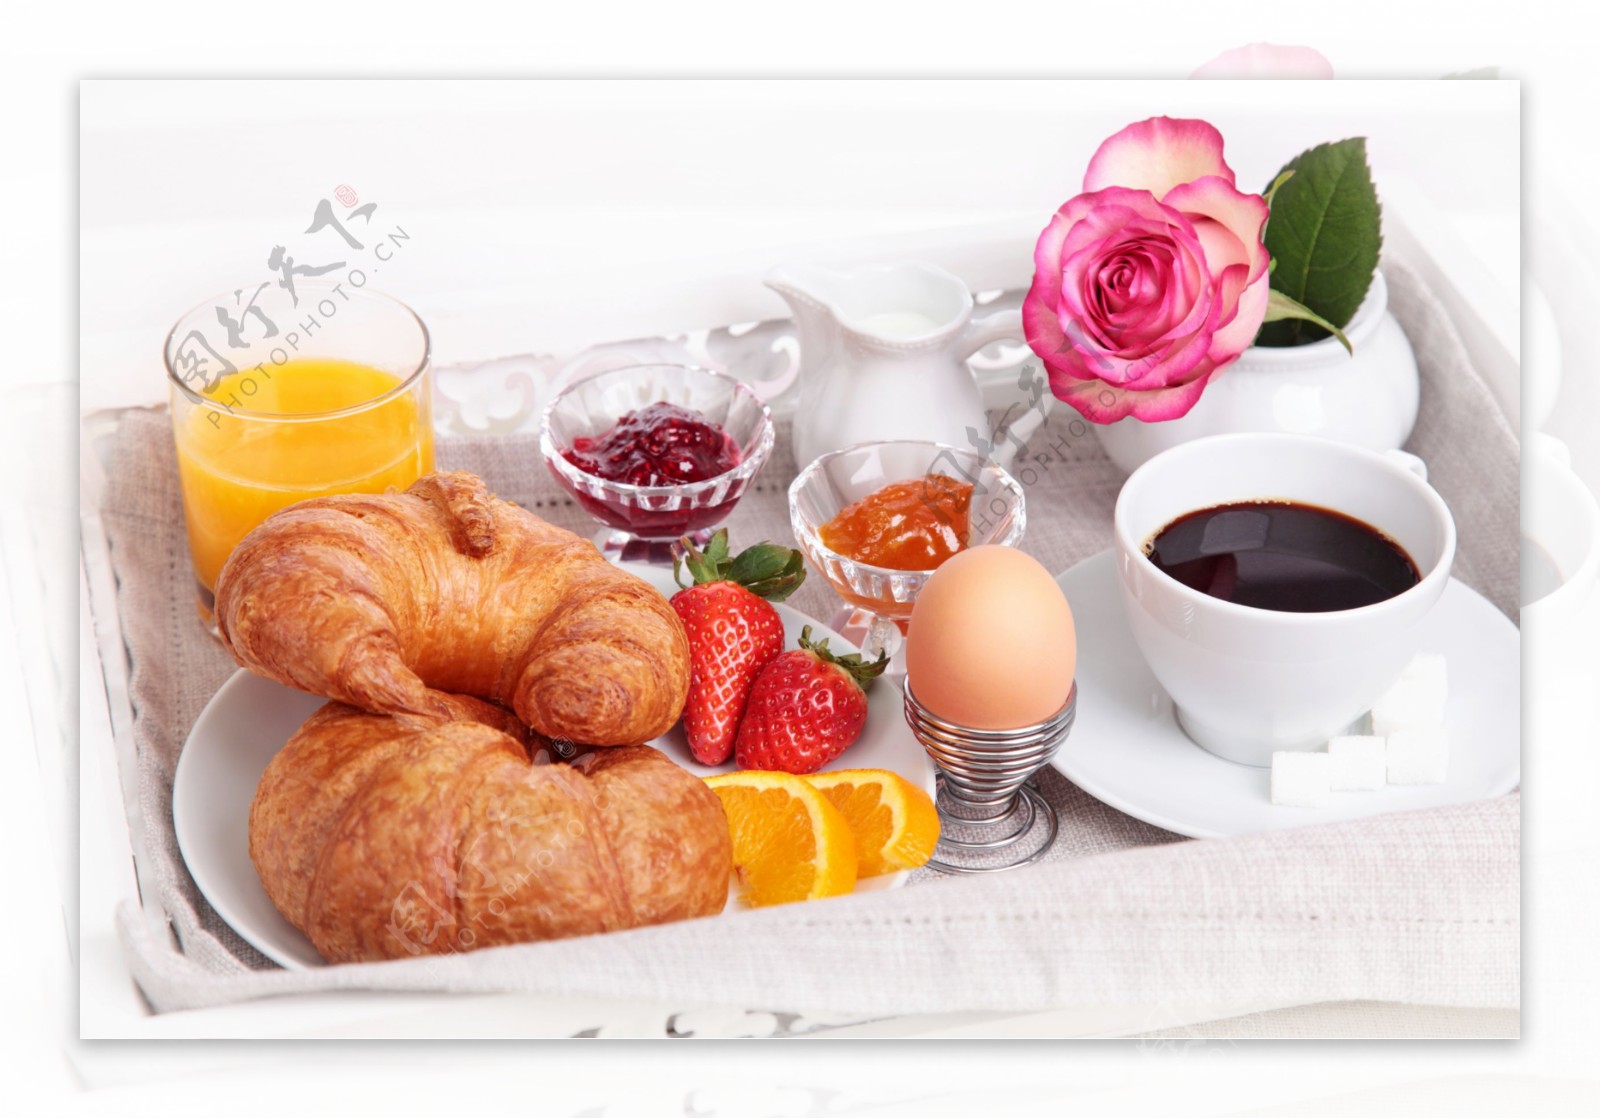 【早安】最简单却又非常营养的早餐_搜狐美食_搜狐网